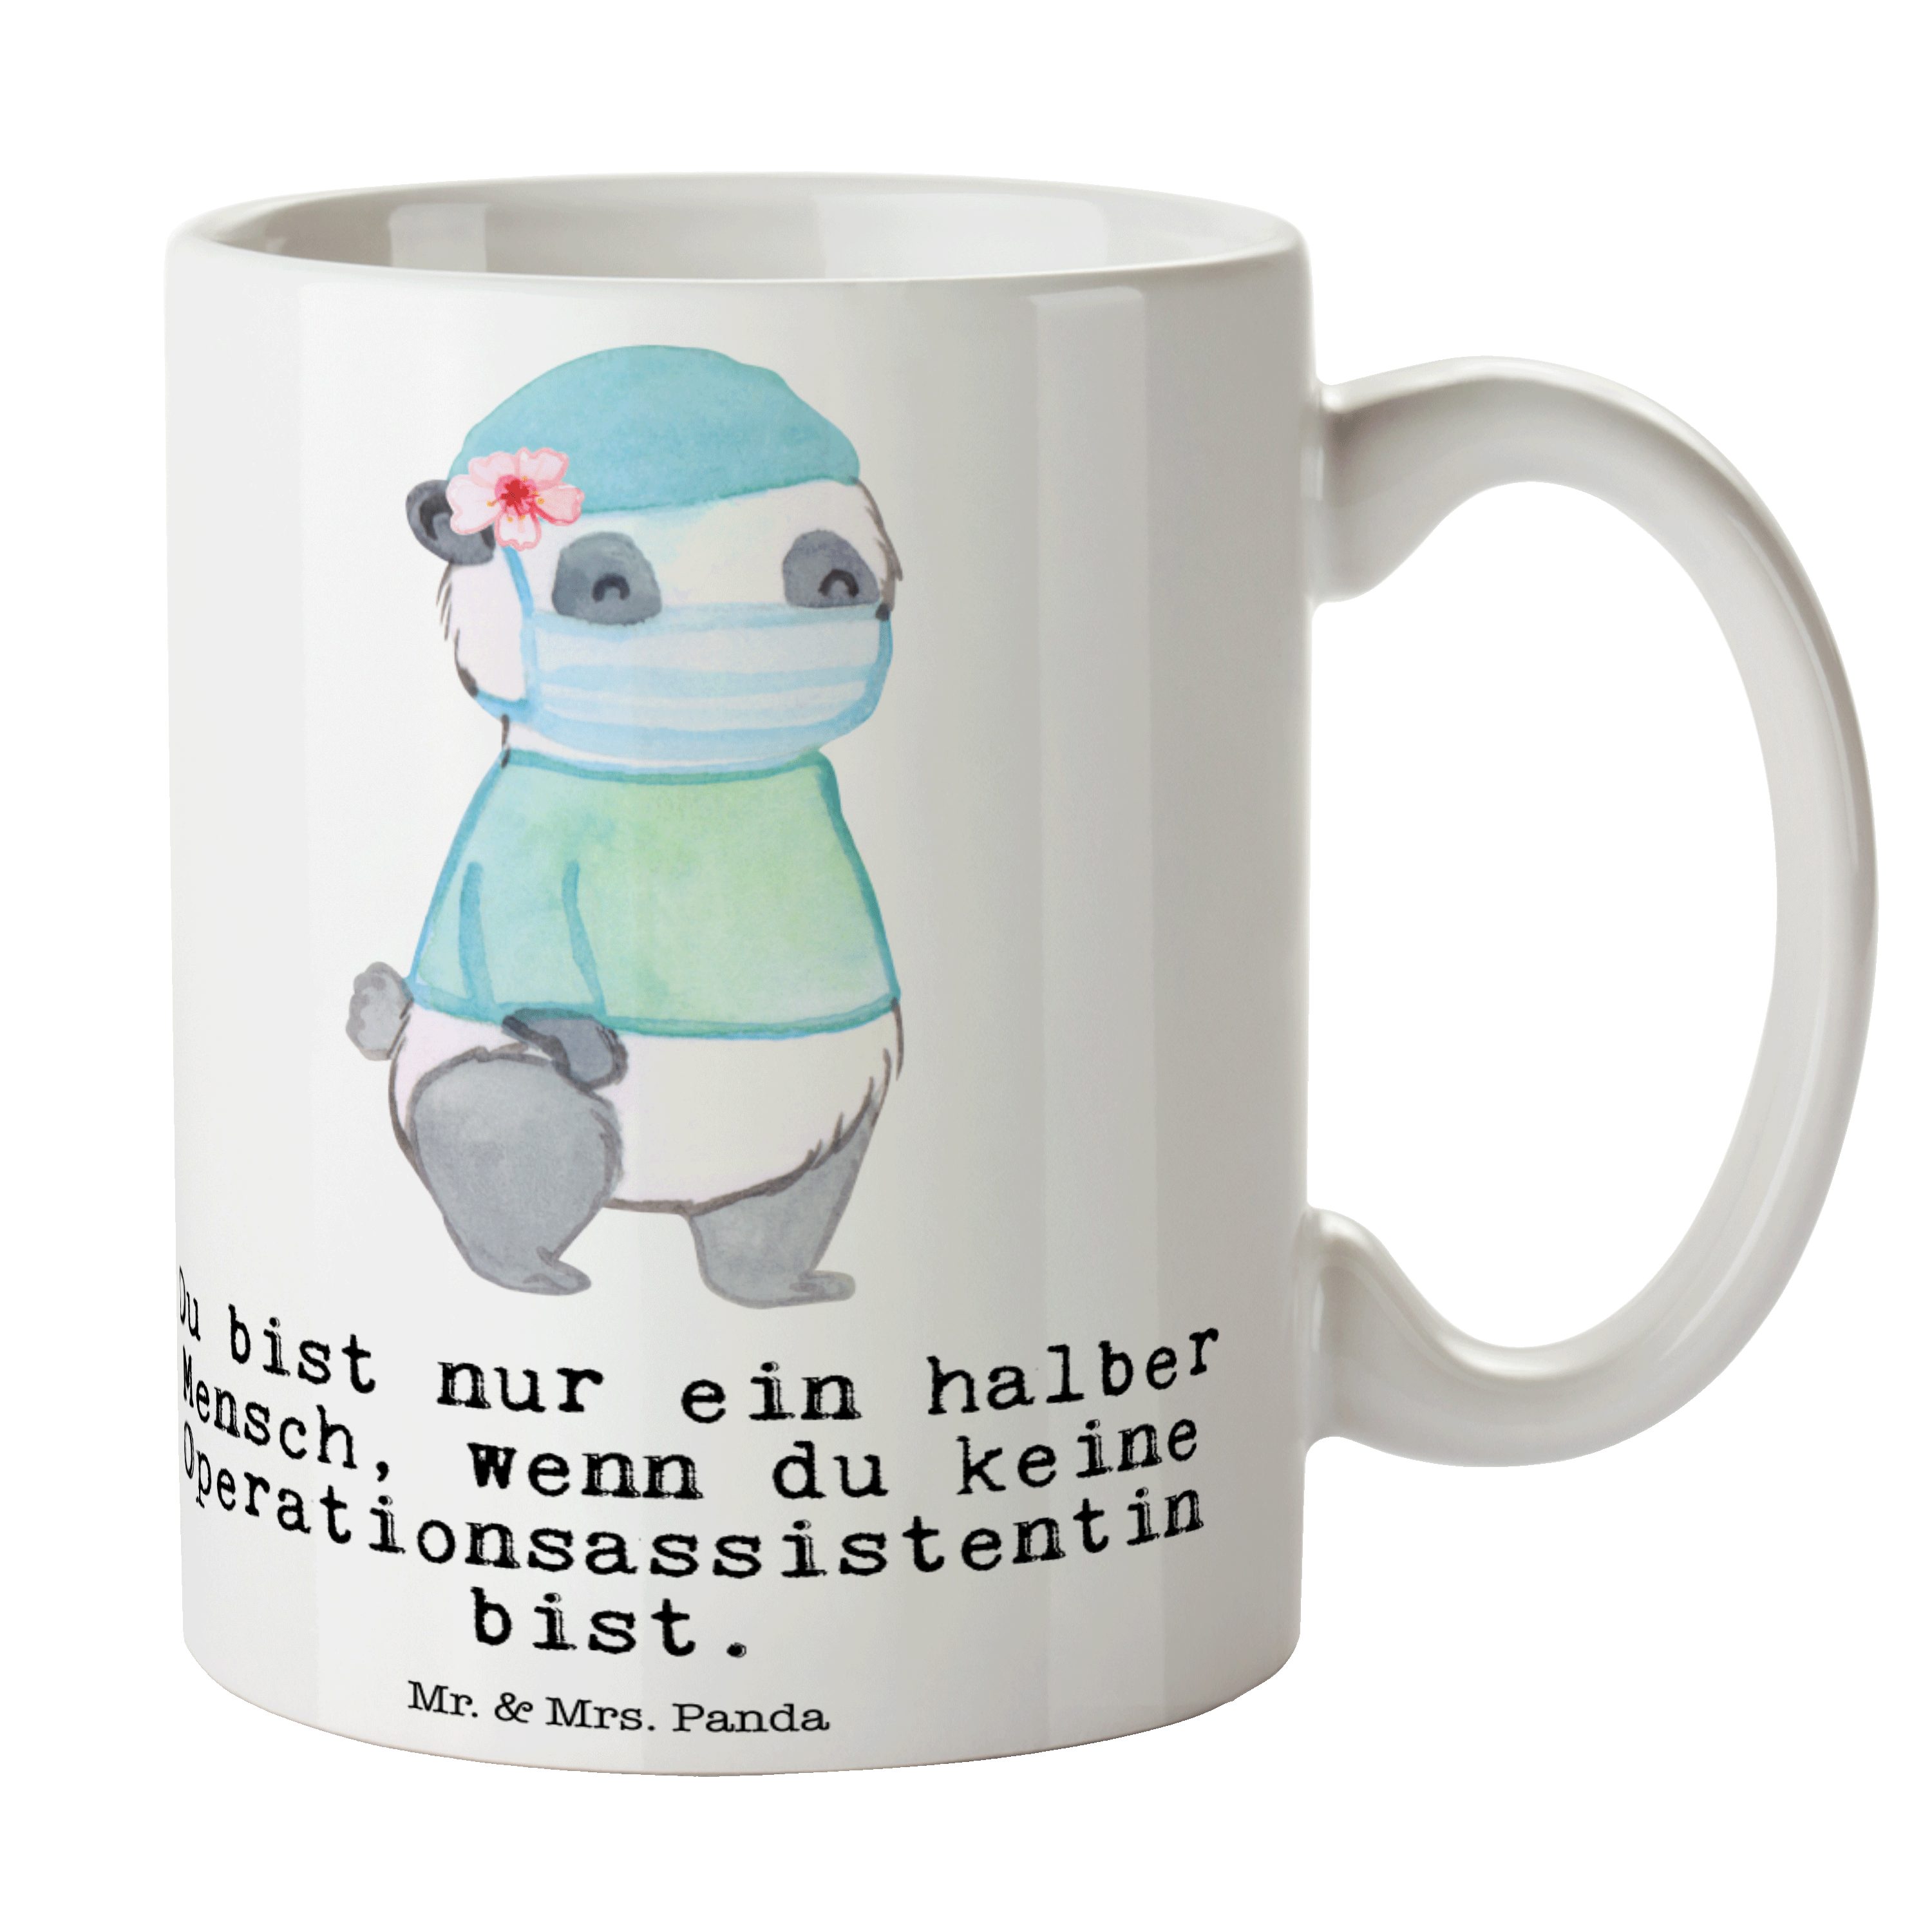 Tasse - Weiß Herz mit - Ausbildung, Mr. Geschenk, Mrs. Operationsassistentin Keramik Panda Kaffeet, &